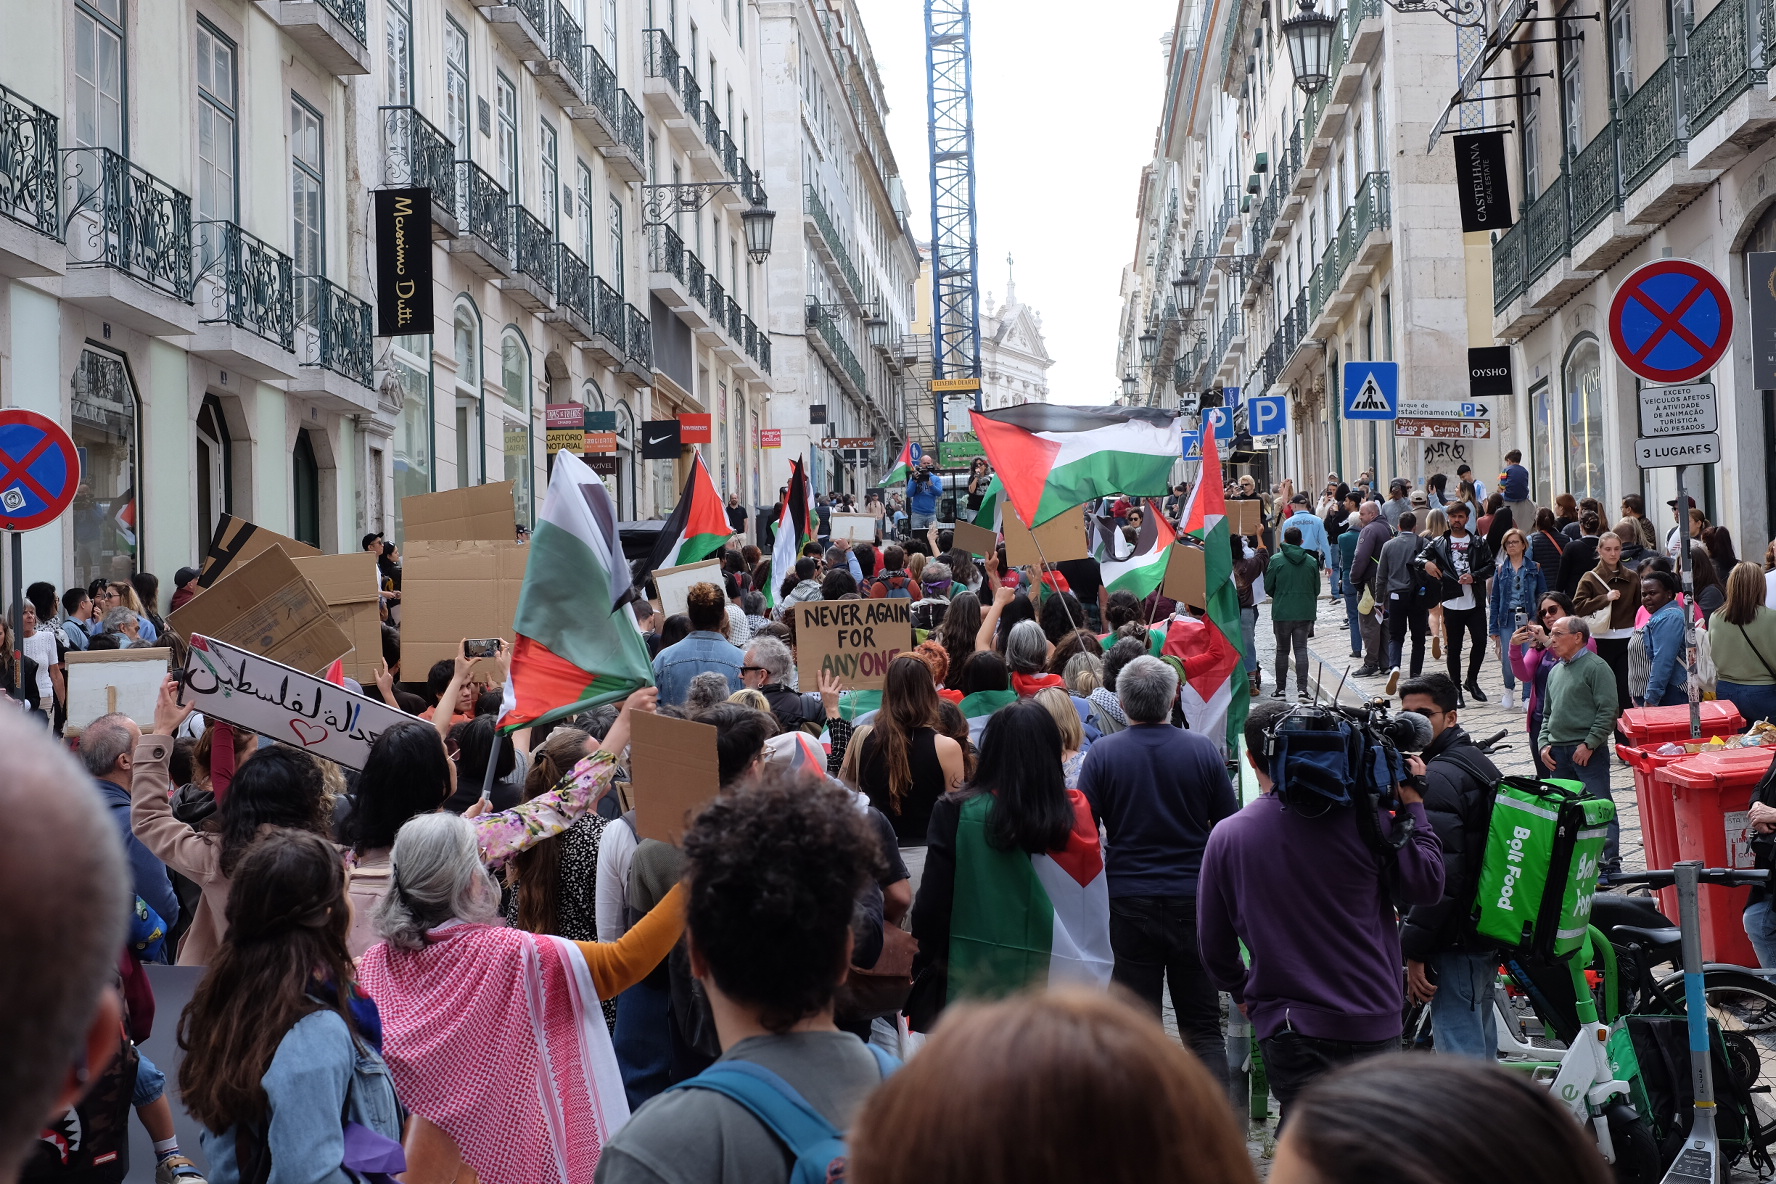 Marcha ‘Abril pela Palestina’ junta várias centenas de pessoas em Lisboa pelo “fim da ocupação e cessar fogo imediato”